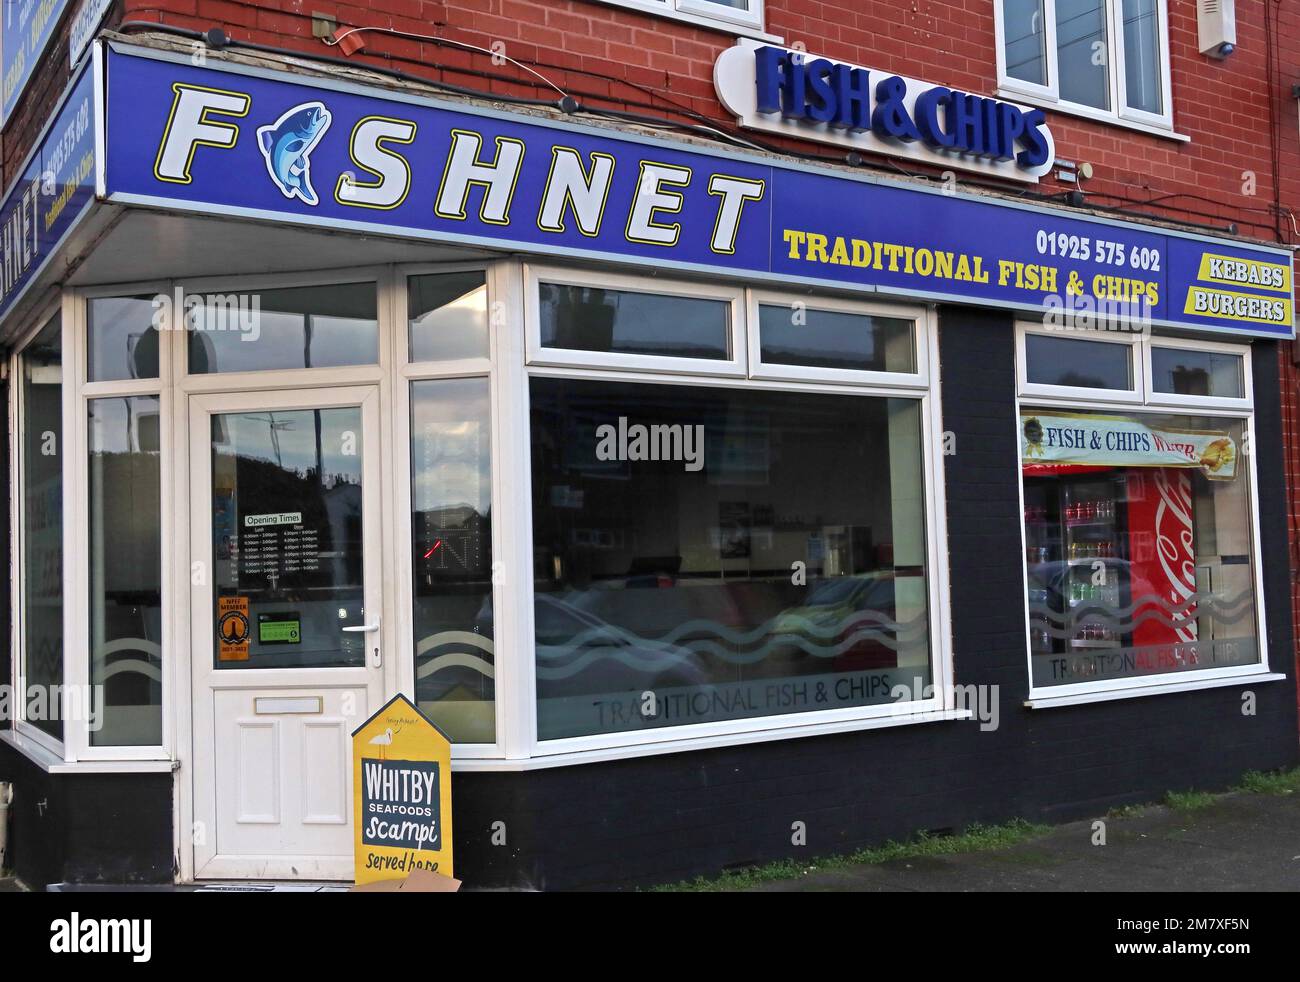 Fishnet, un tradizionale negozio britannico di Fish & chip, al 124 Thelwall Lane, Latchford, Warrington, Cheshire, Inghilterra, REGNO UNITO, WA41LU Foto Stock